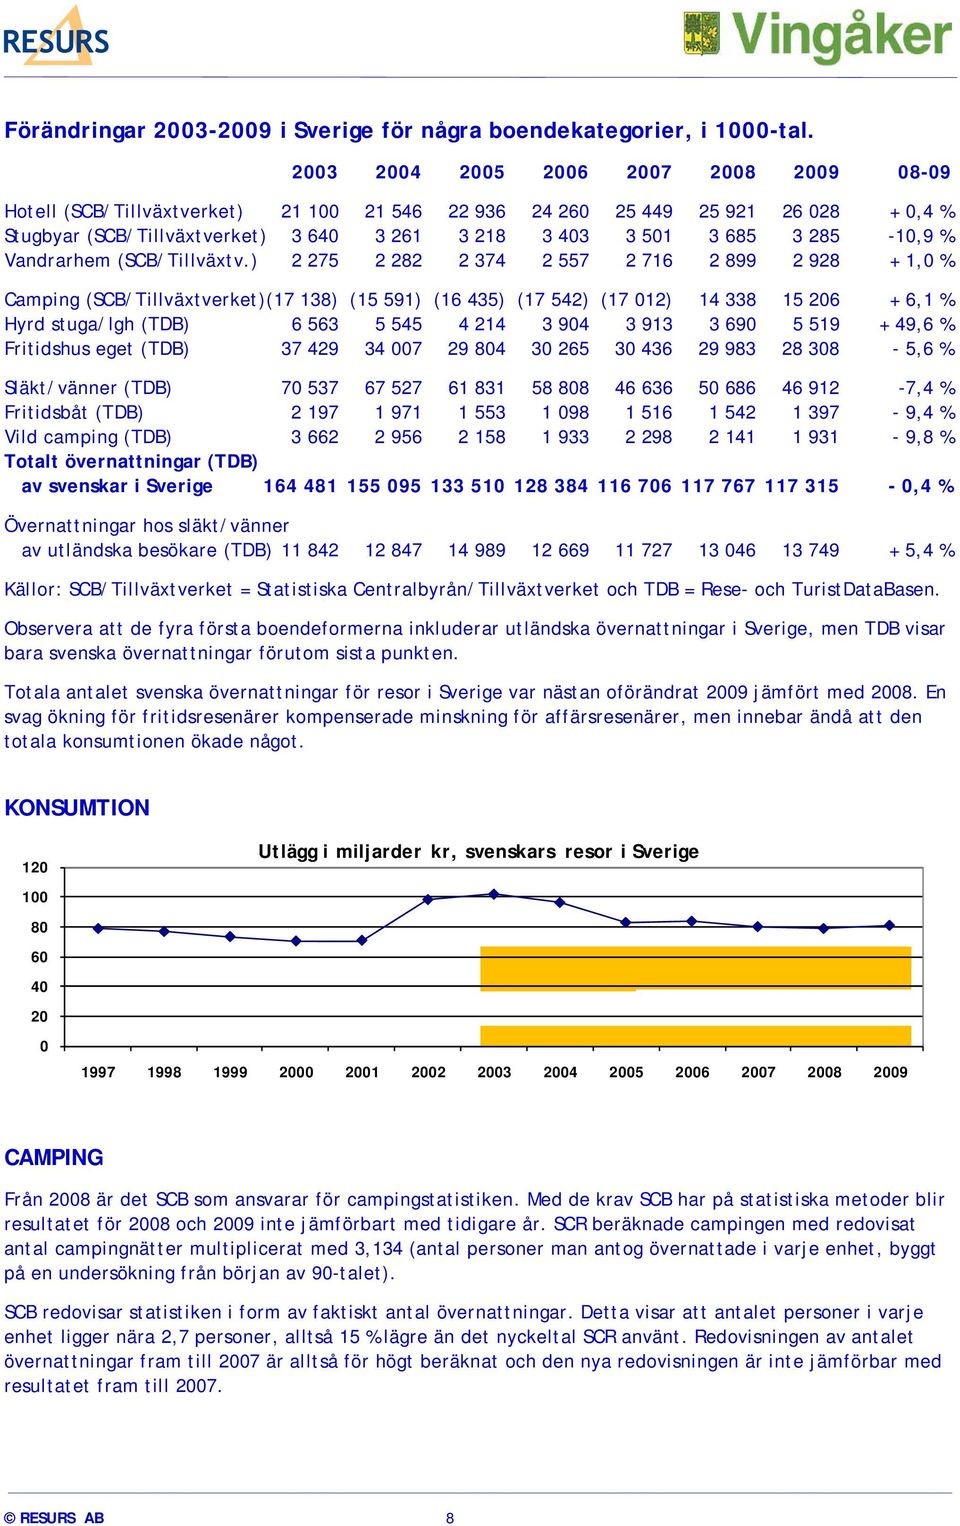 285-10,9 % Vandrarhem (SCB/Tillväxtv.